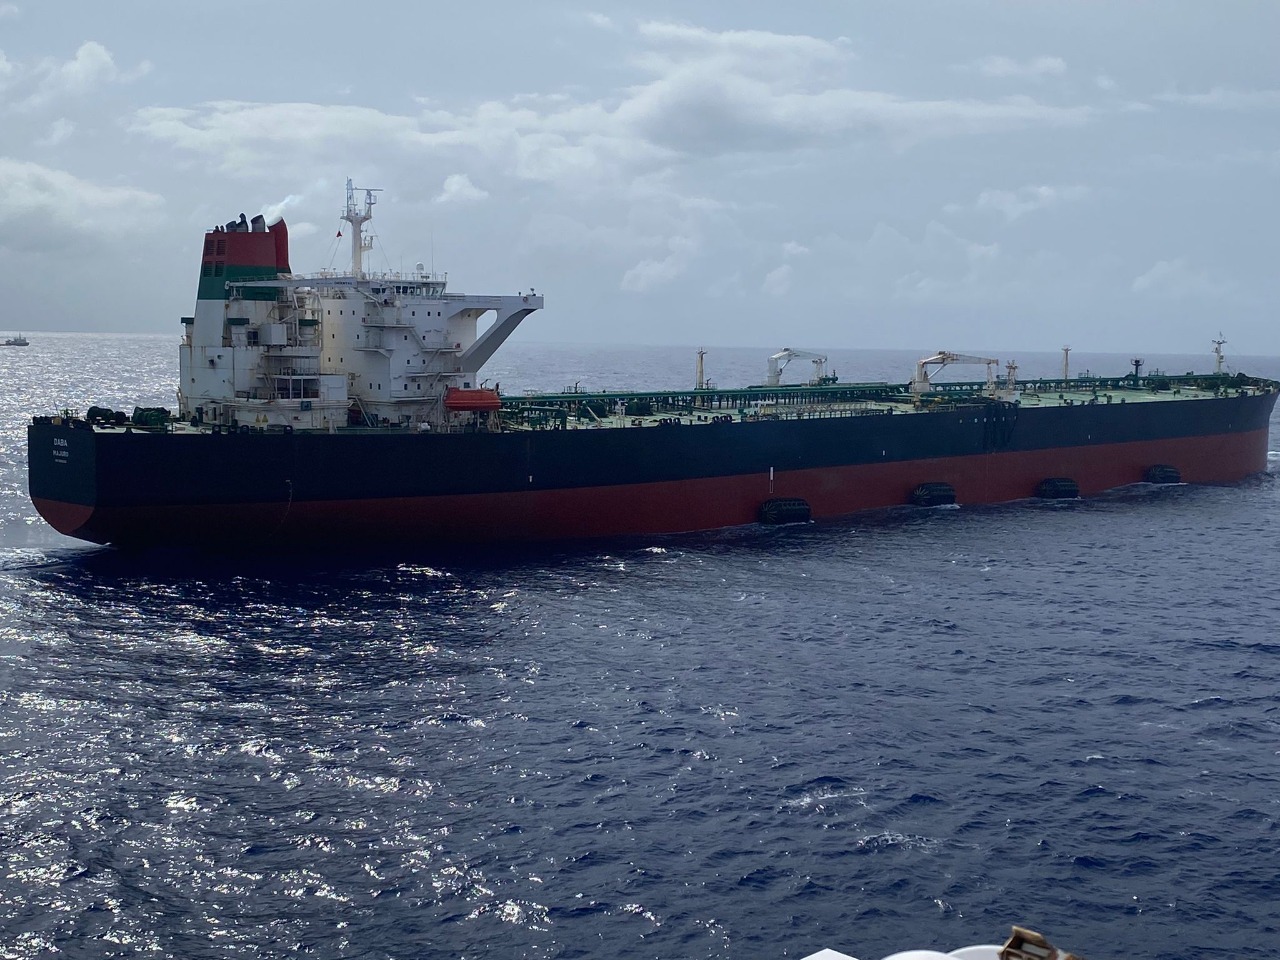 Acelen importa da África 2 milhões de barris de petróleo em supernavio com pegada zero de carbono no transporte marítimo